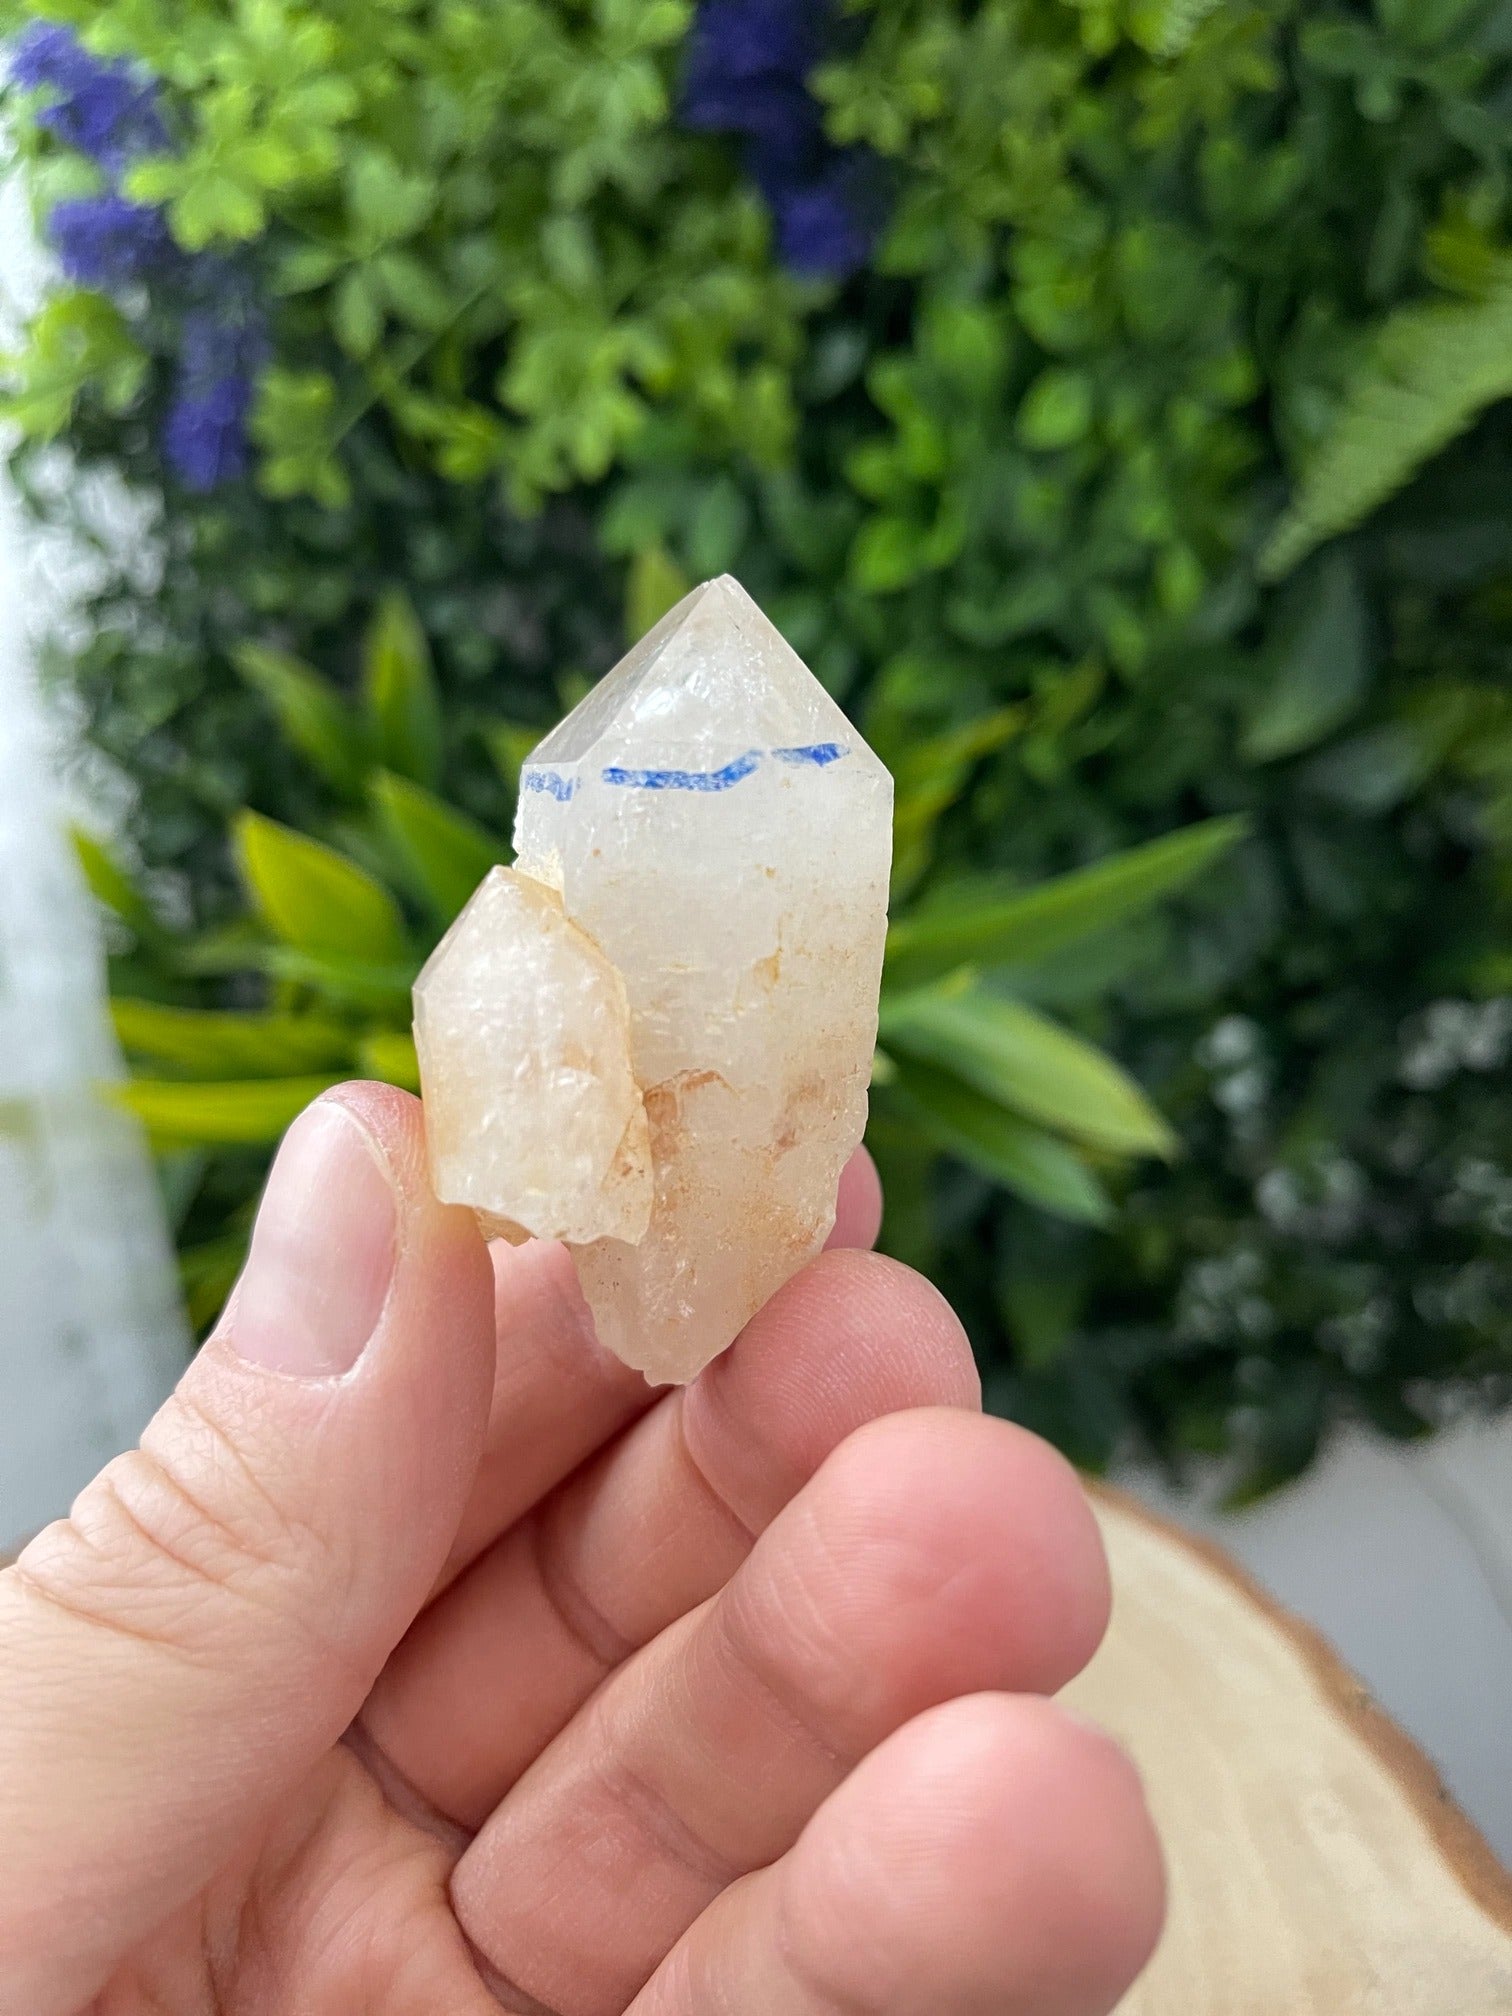 Bergkristall mit Wassereinschluss (Selten) - Hydro Bergkristall